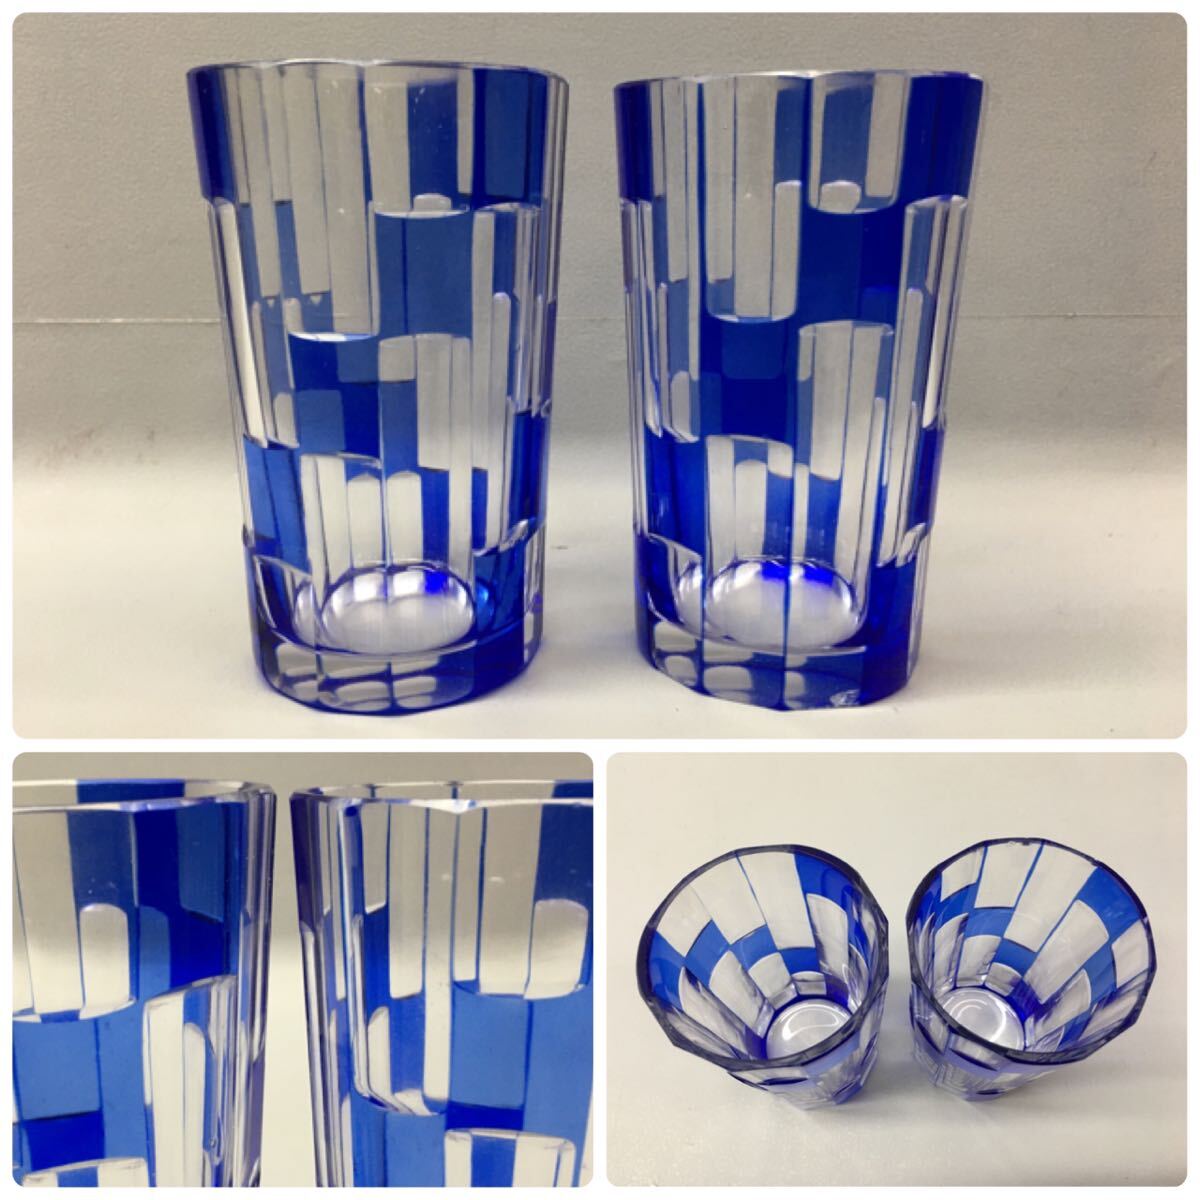 ◆色被せ切子 まとめて 12点 セット 青 ブルー ガラス製 花瓶 グラス ショットグラス 灰皿 食器 雑貨 切子 カットガラス 工芸品の画像3